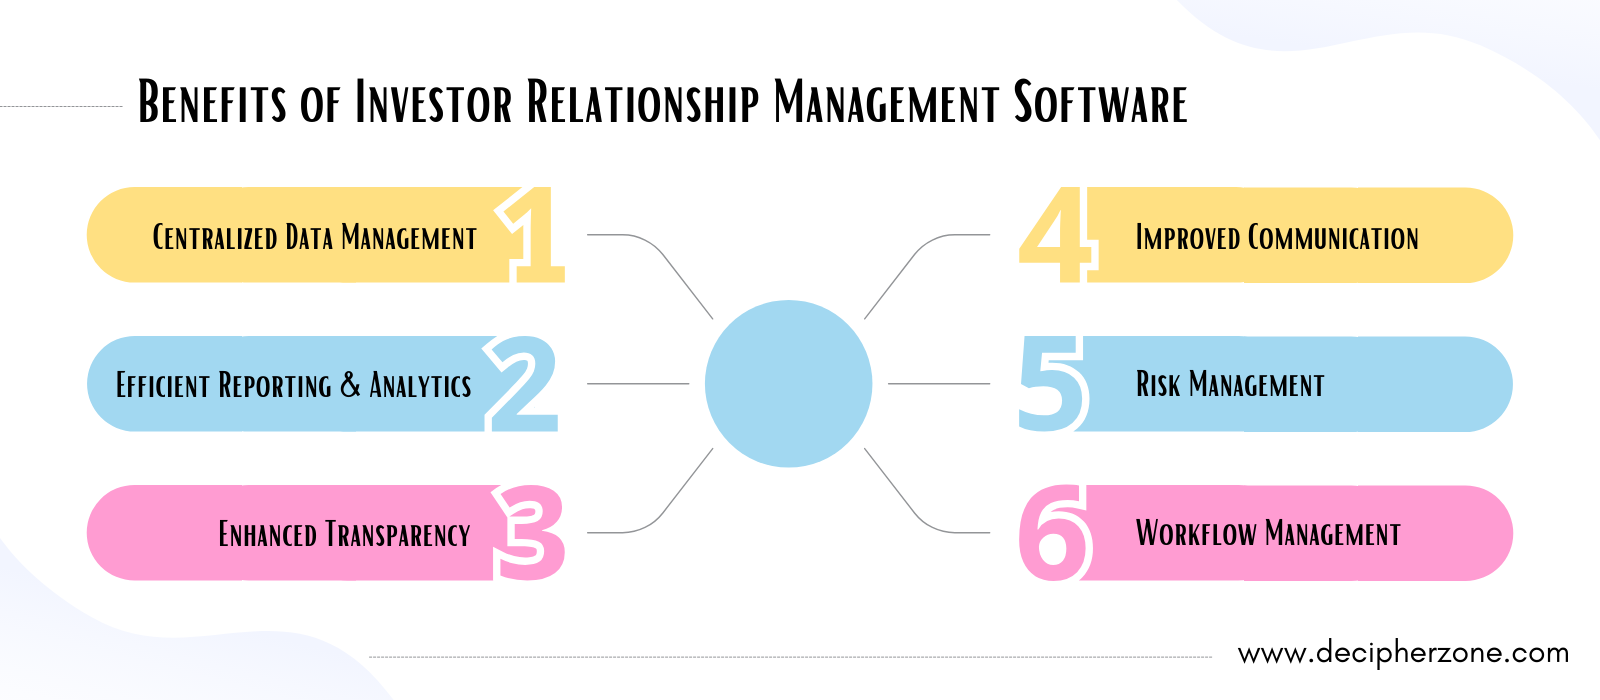 Benefits of Investor Relationship Management Software